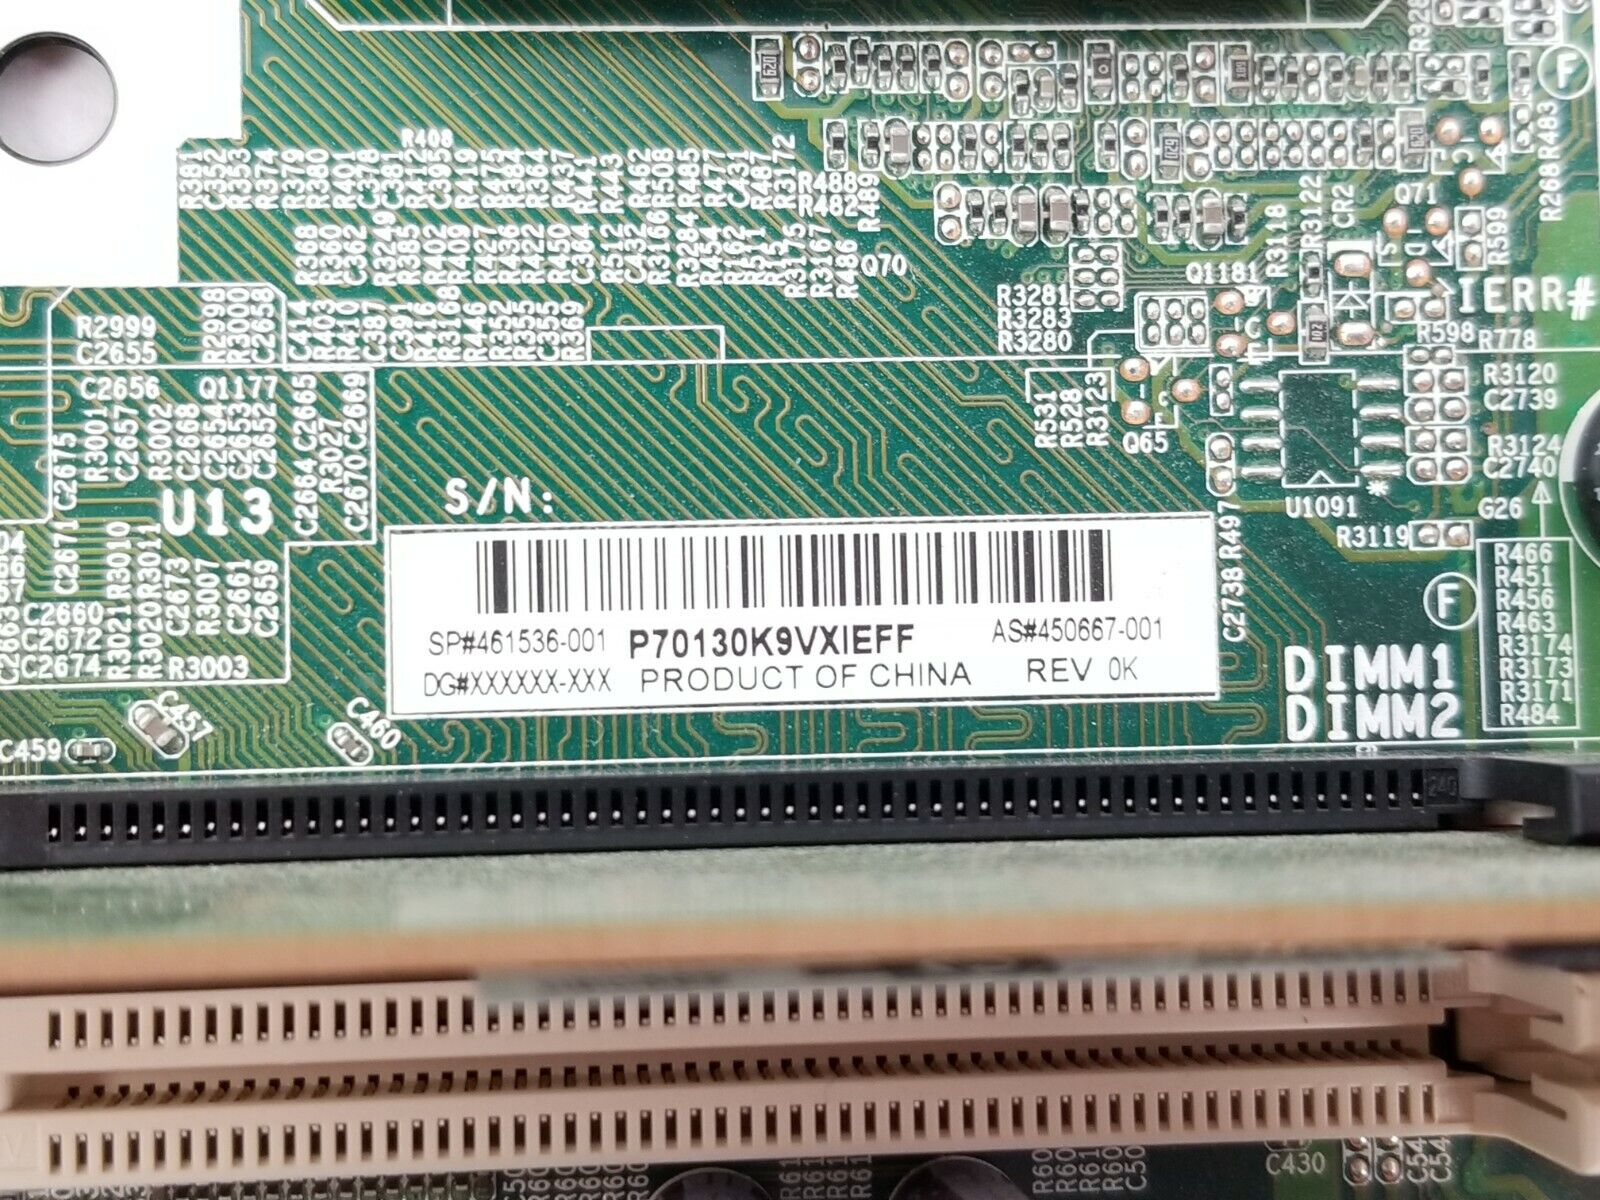 HP 450667-001 Compaq DCS5800 SFF Motherboard Intel Core 2 Duo E7400 2.8GHz 2GB R